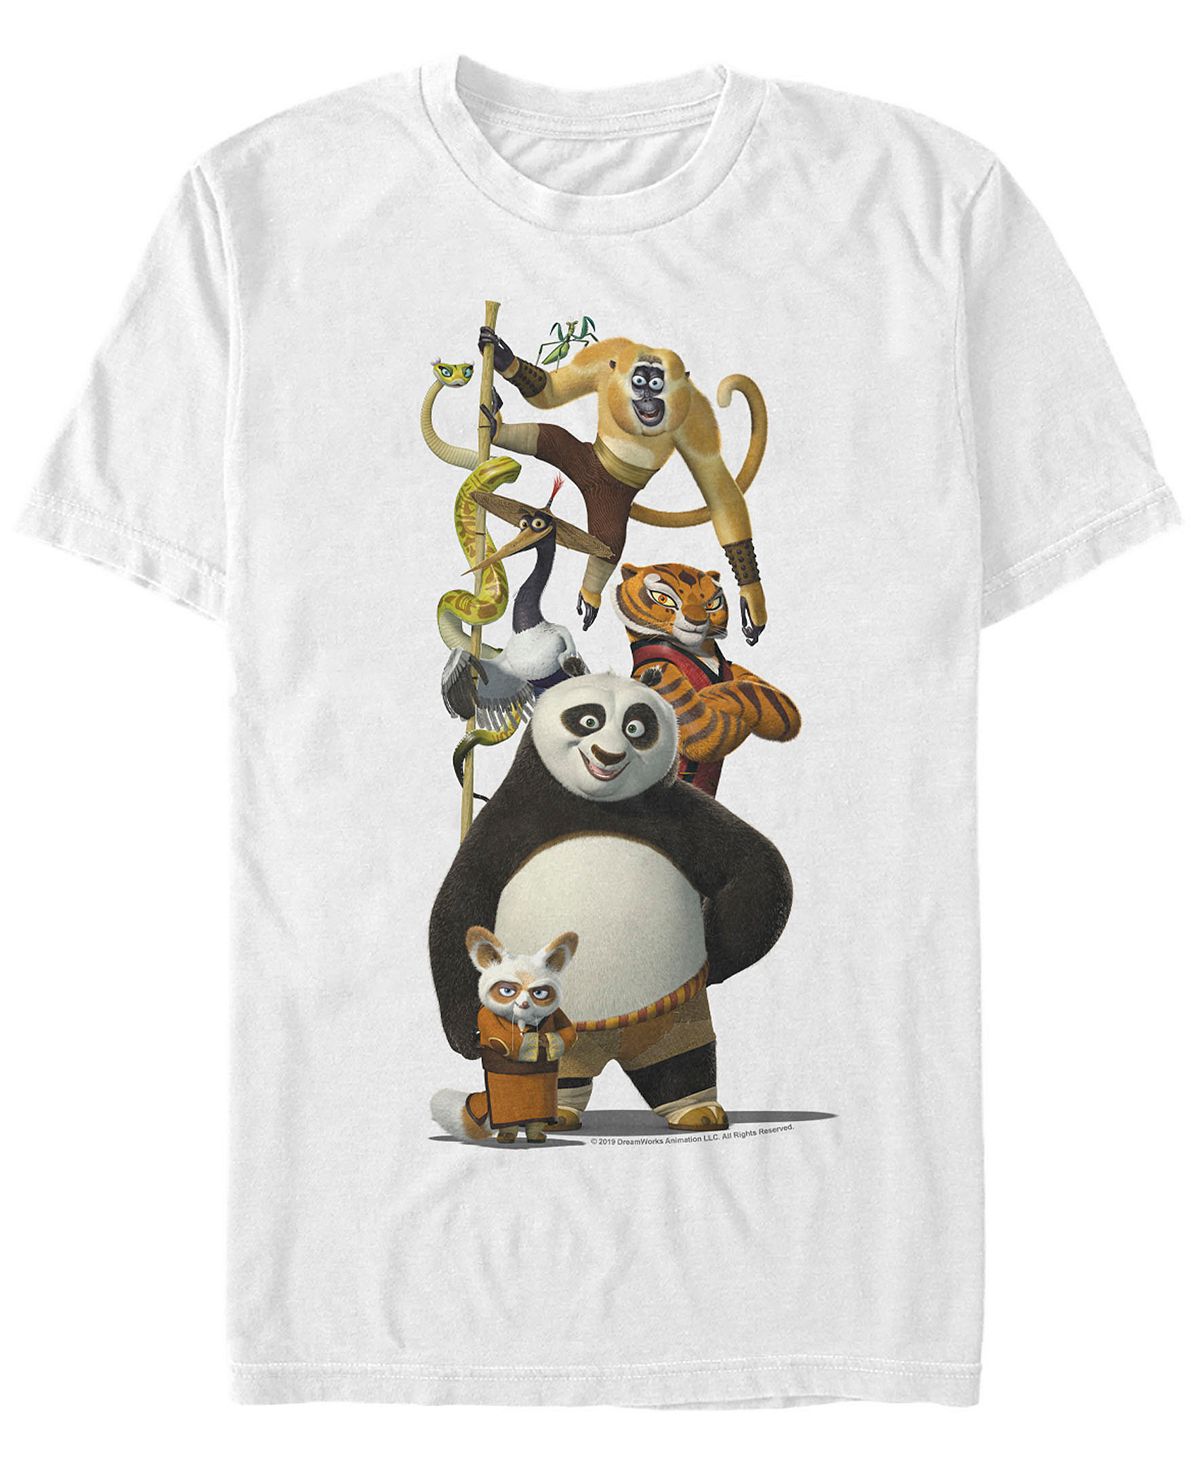 Мужская футболка с короткими рукавами по и друзья кунг-фу панда Fifth Sun, белый